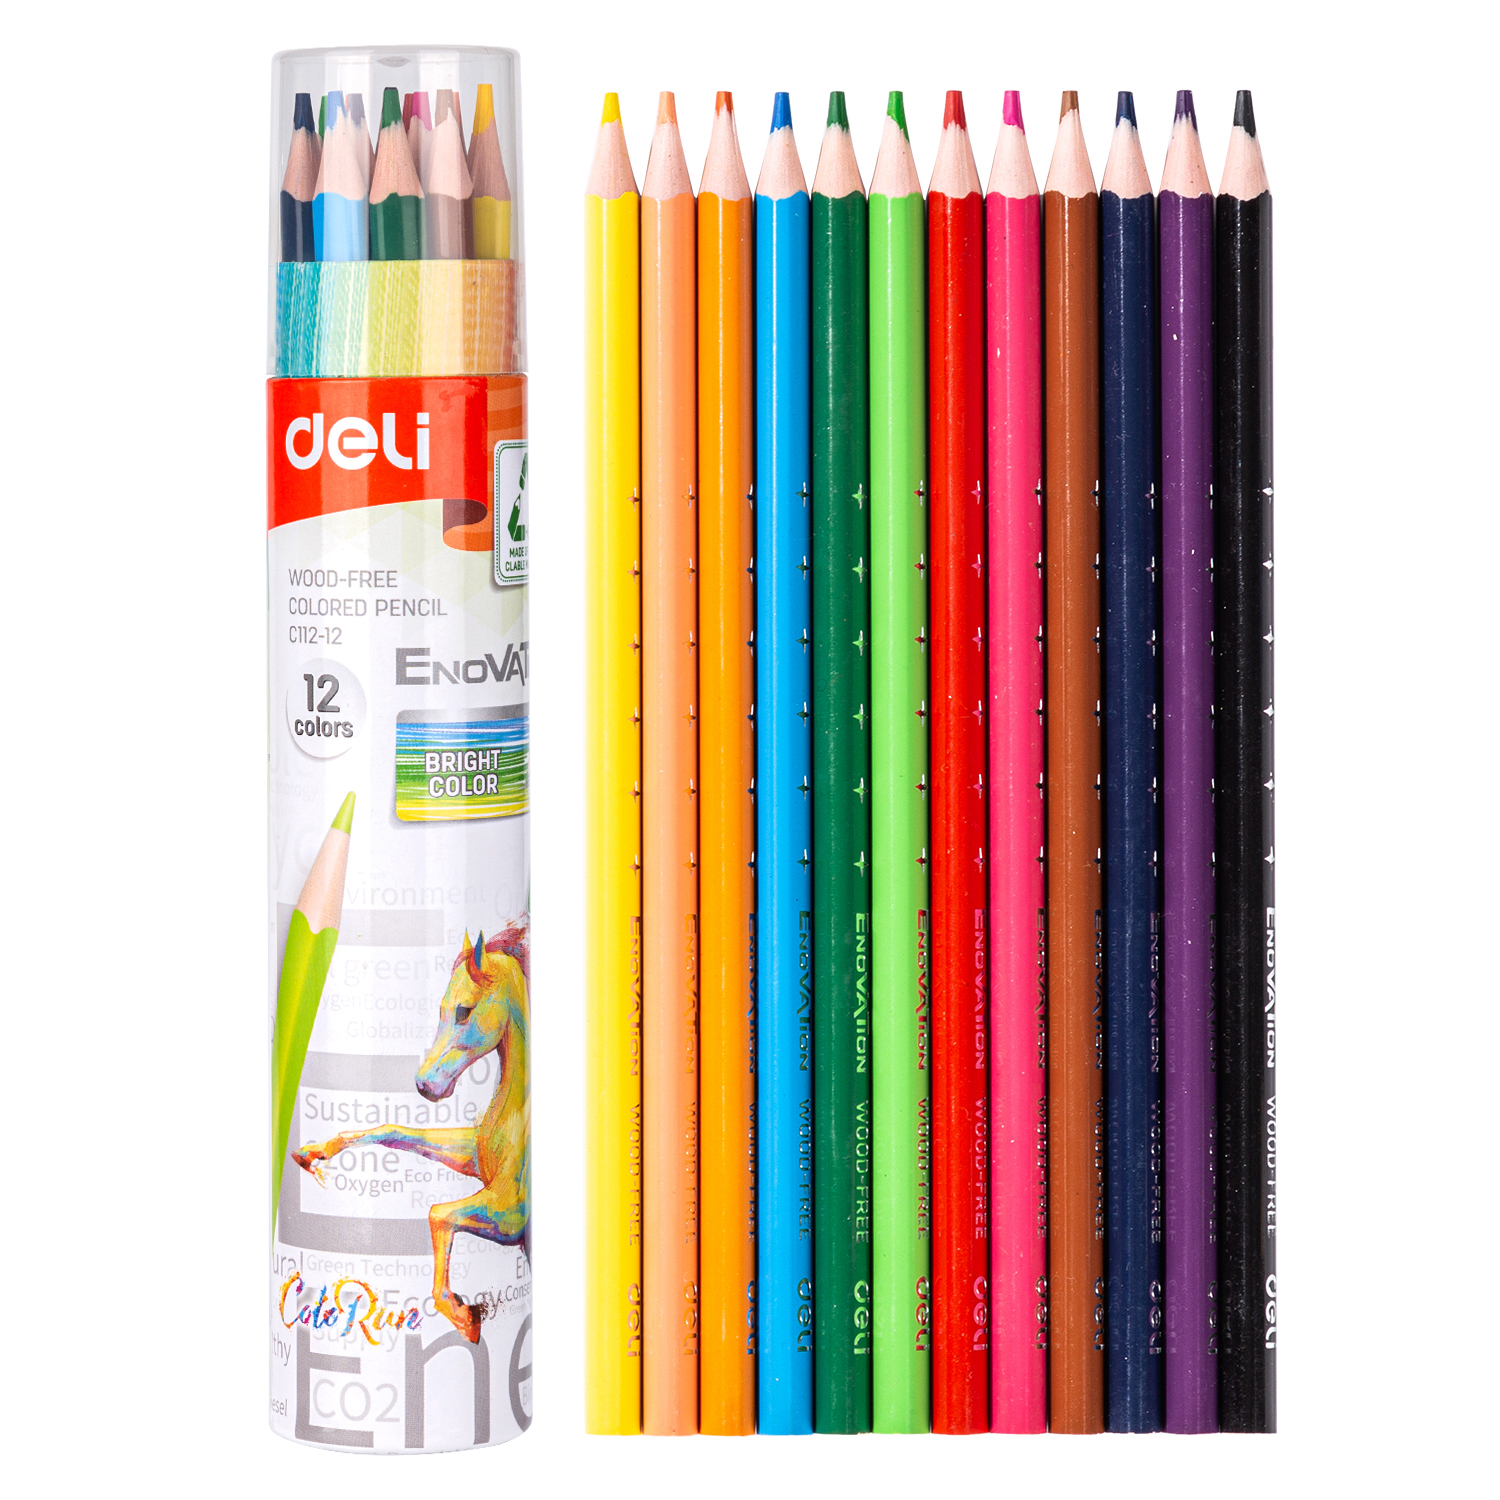 Deli-EC112-12 Colored Pencil